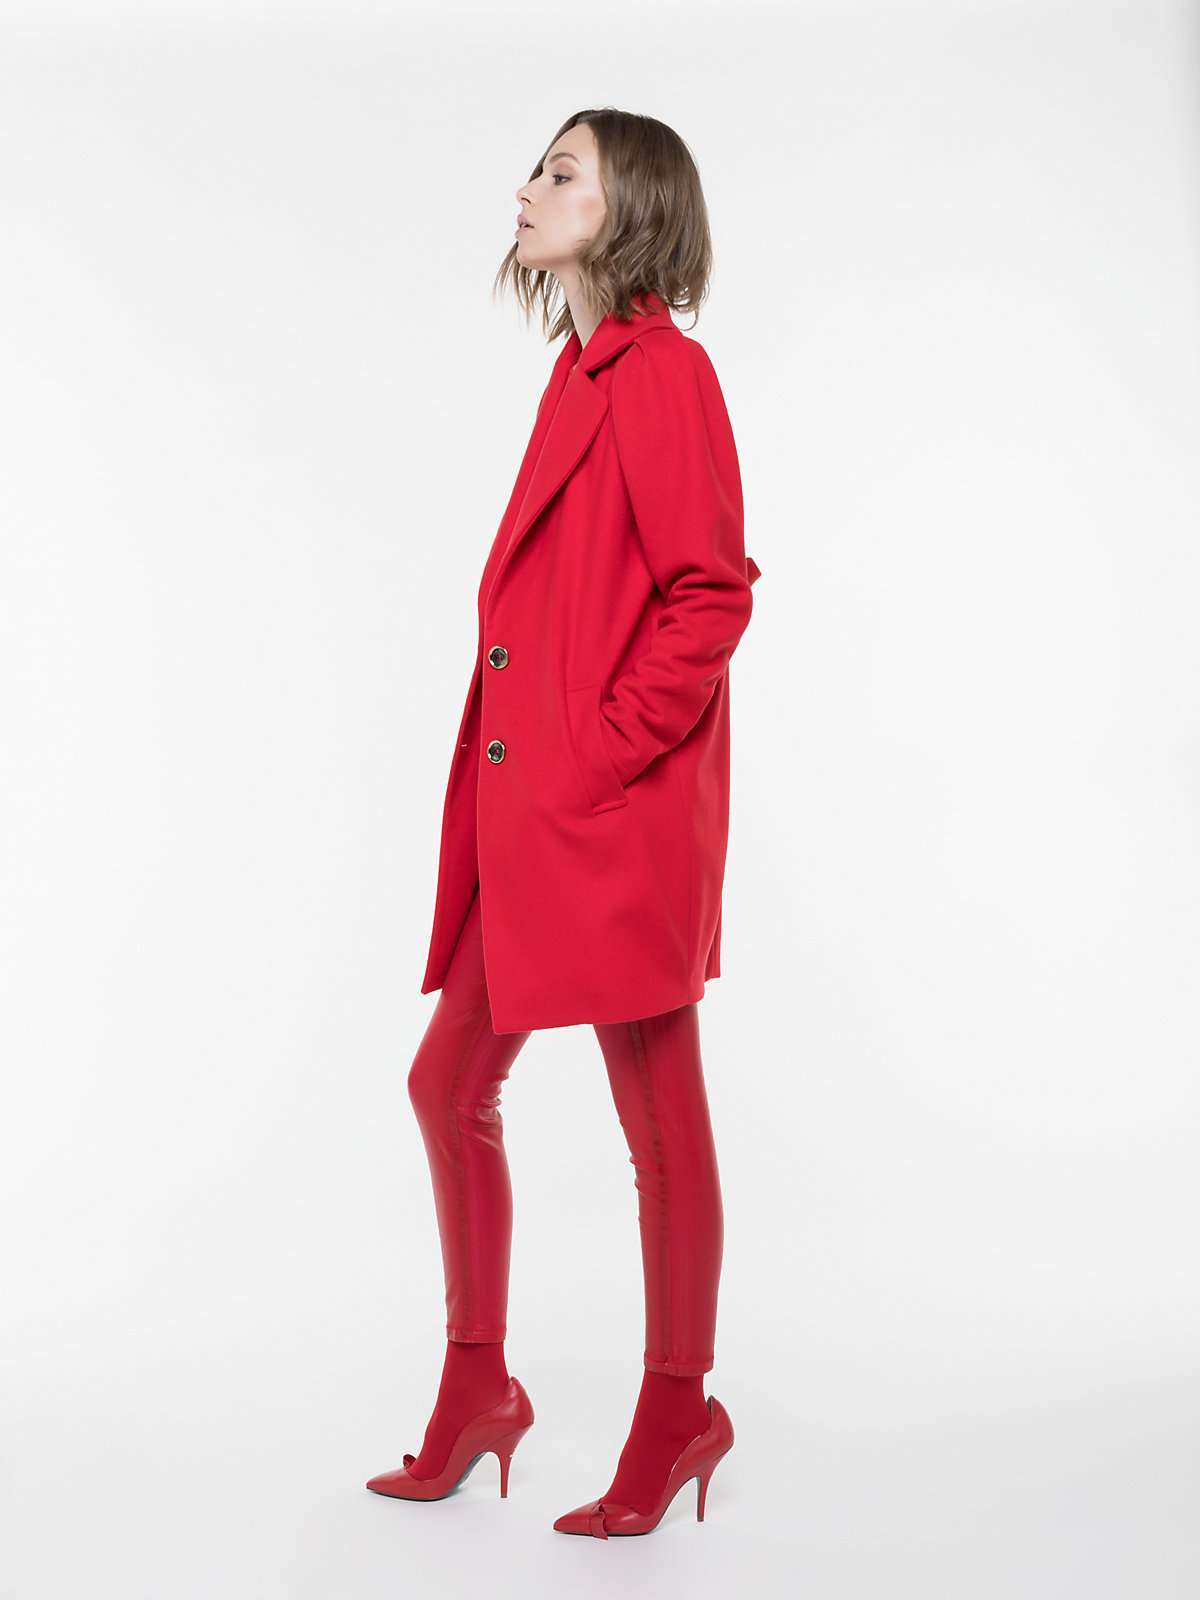 Cappotto rosso in lana e cashmere Patrizia Pepe a 548 euro